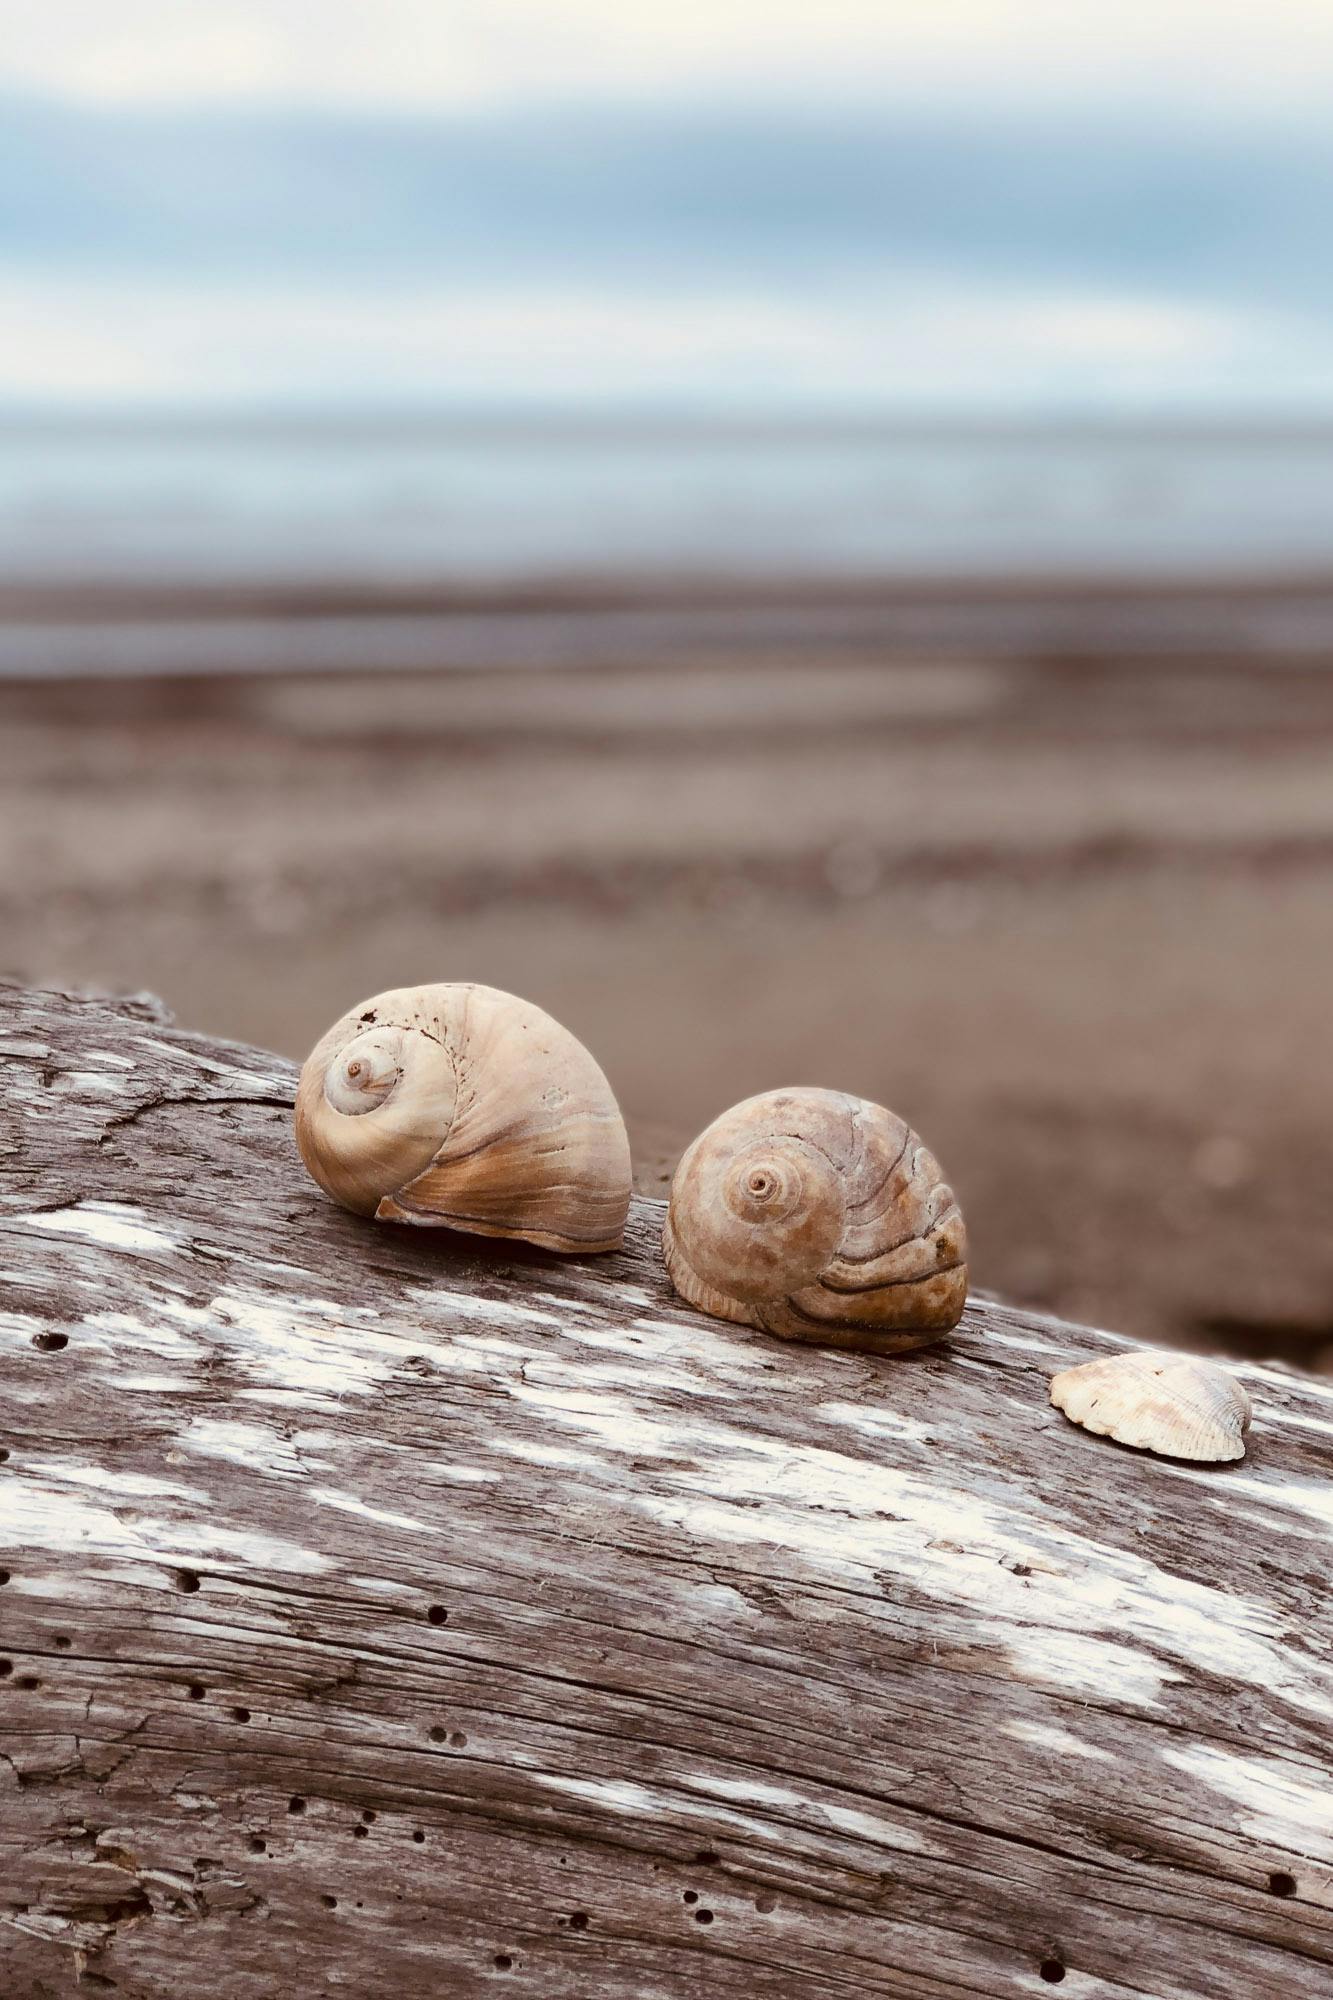 Snails on driptwood near a beach.